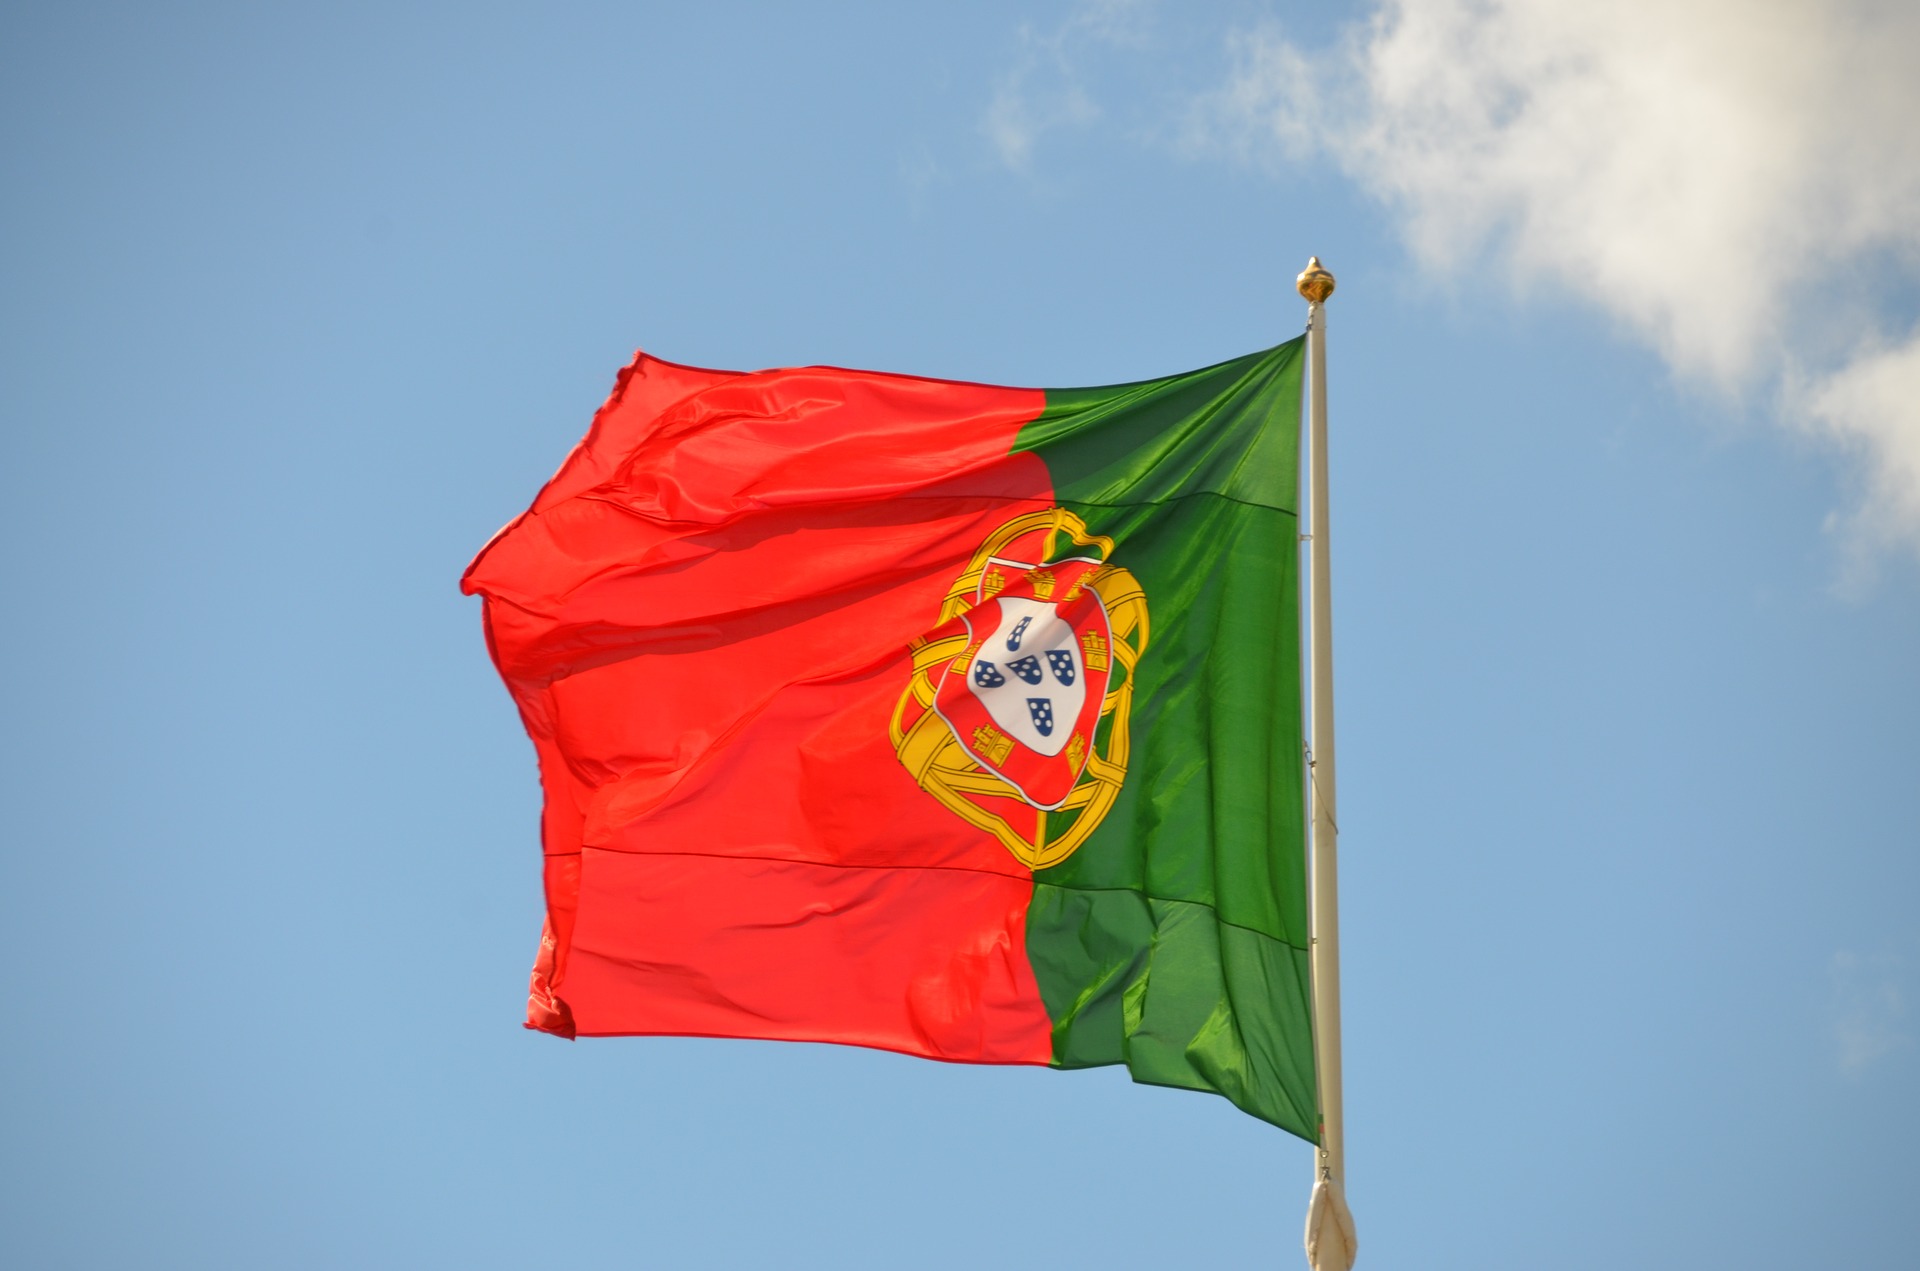 O atual governo em Portugal.